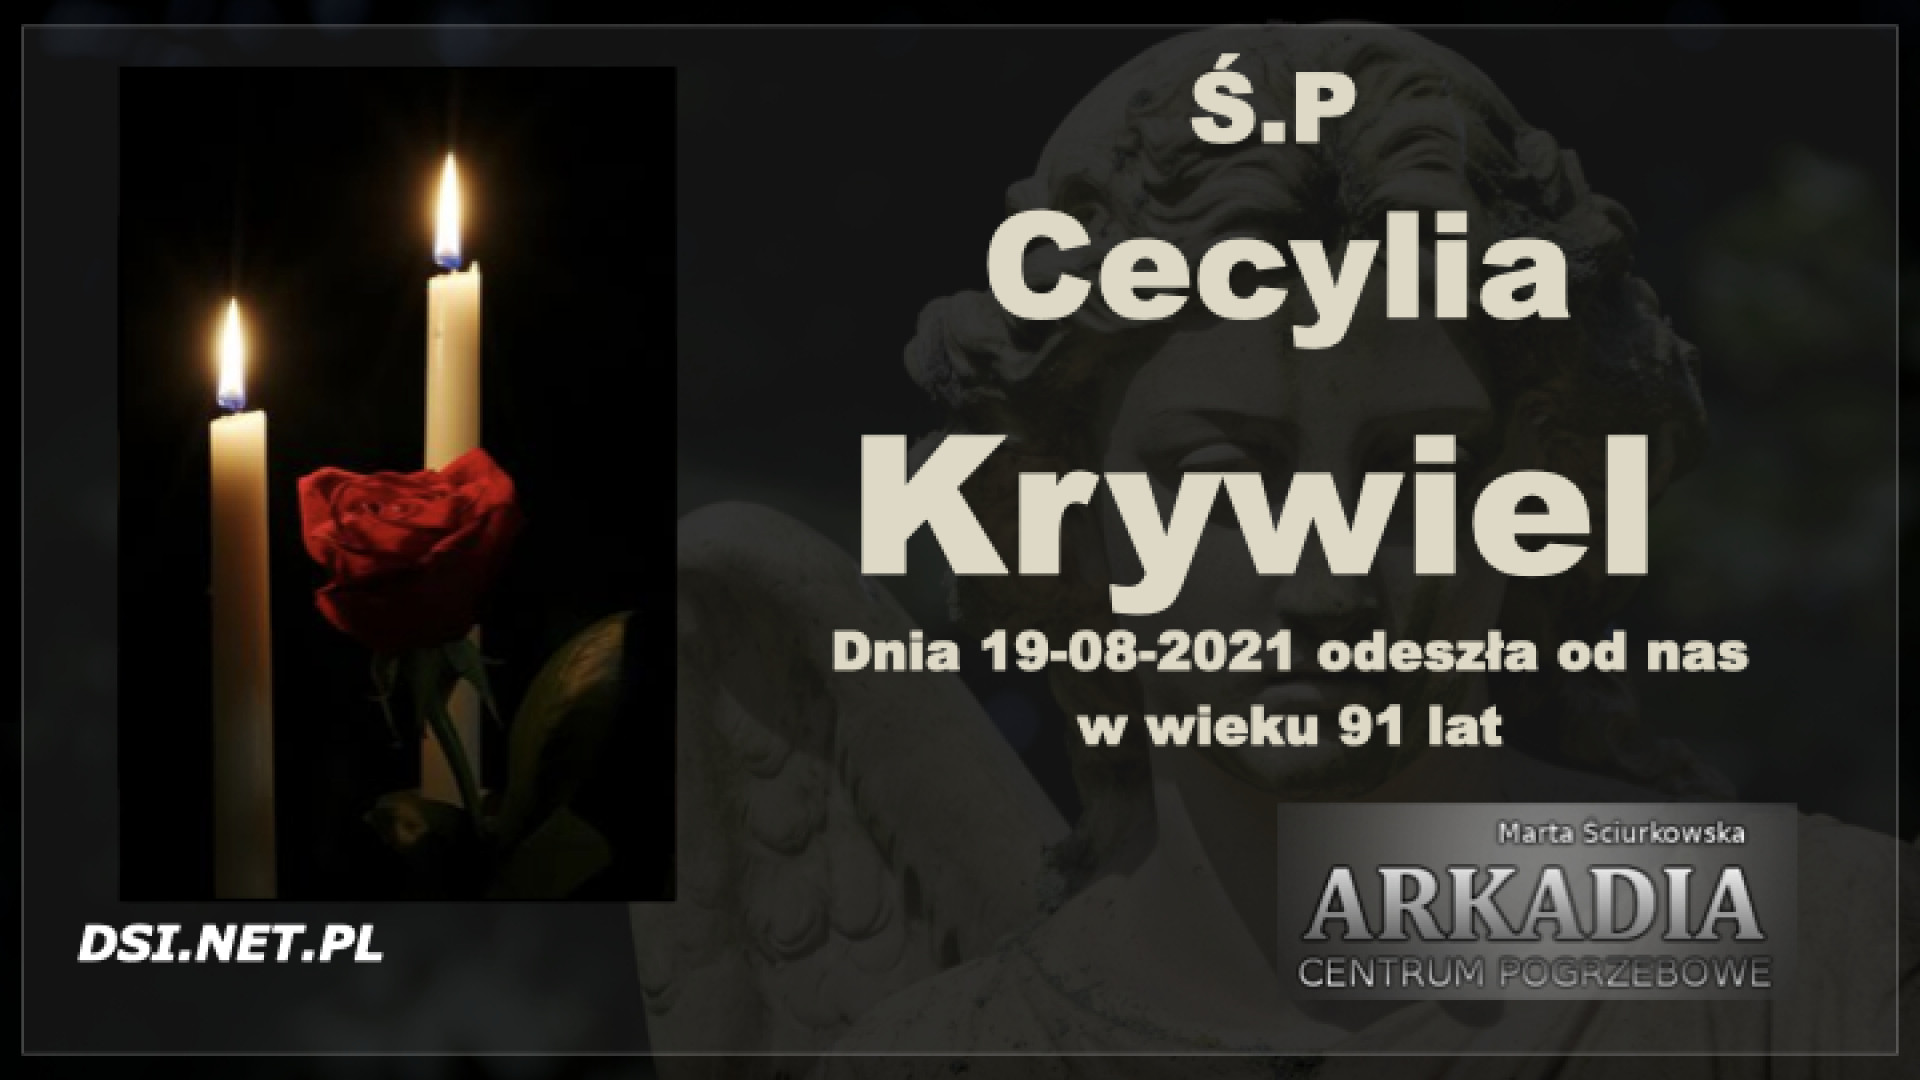 Ś.P. Cecylia Krywiel